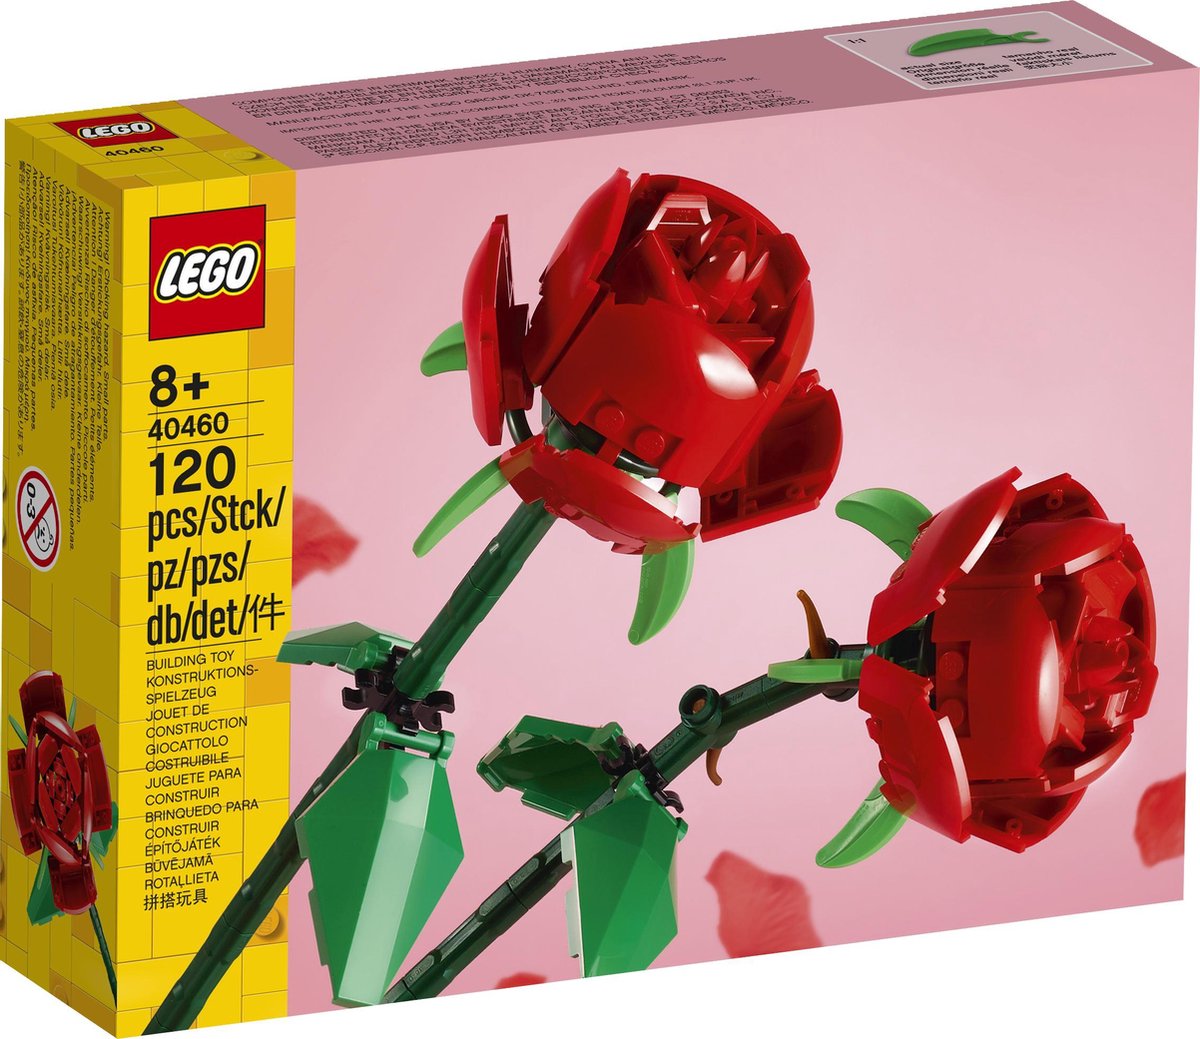 Roses lego 40460